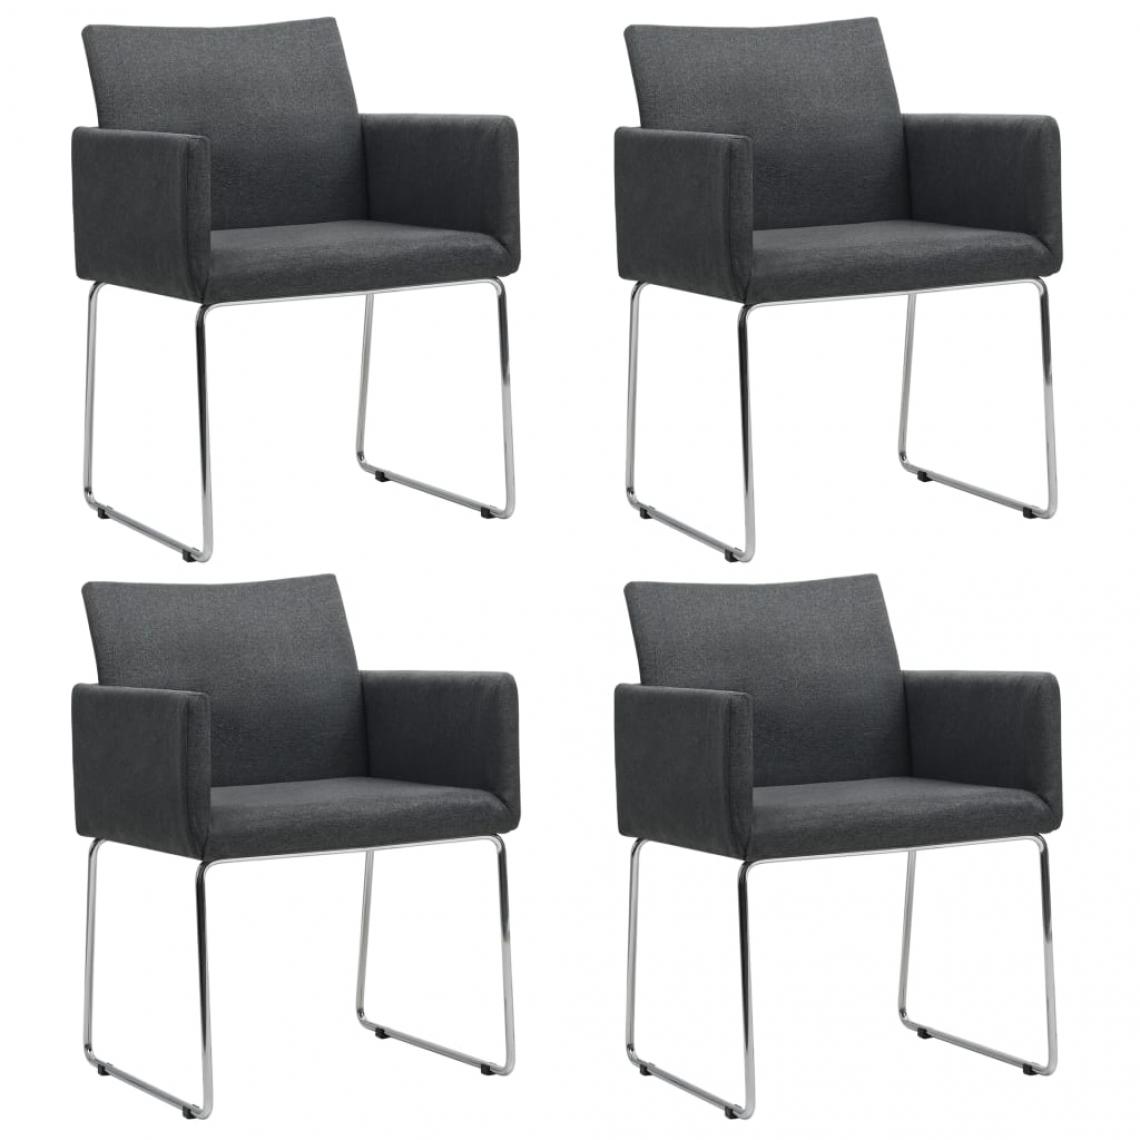 Decoshop26 - Lot de 4 chaises de salle à manger cuisine design contemporain tissu gris foncé CDS021554 - Chaises